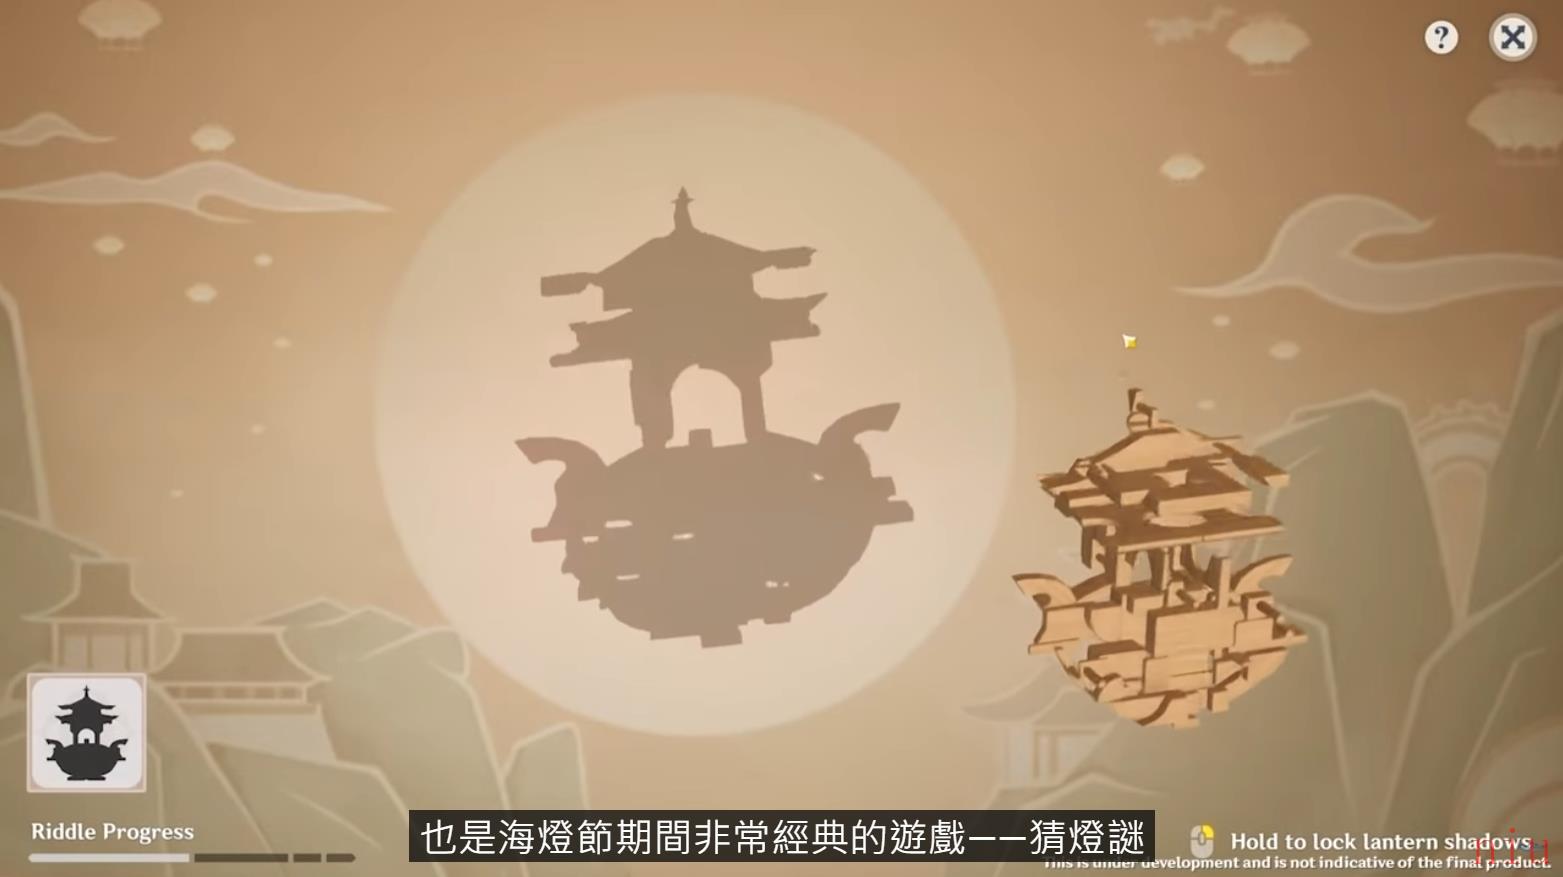 《原神》释出2.4 版本预告「飞彩镌流年」 揭露新角色「申鹤」及「云堇」等情报